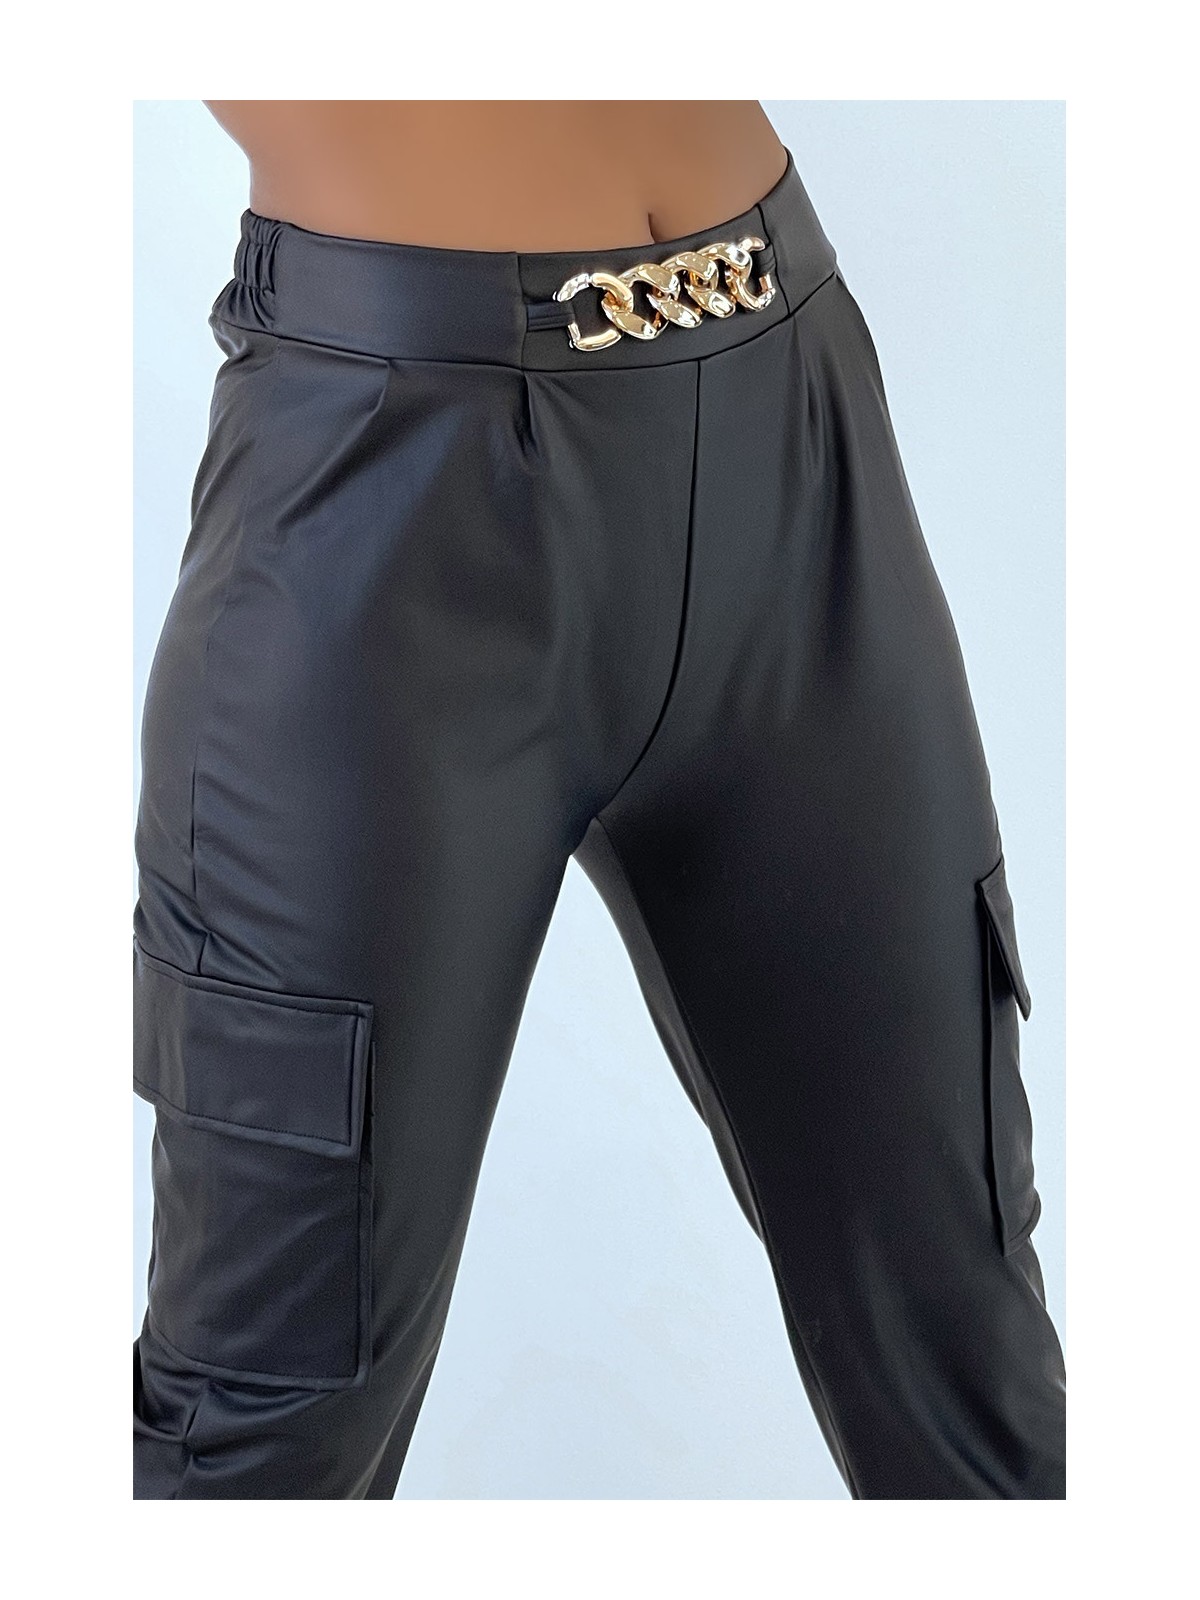 Pantalon jogging cargo noir coupe ample avec accessoire - 4